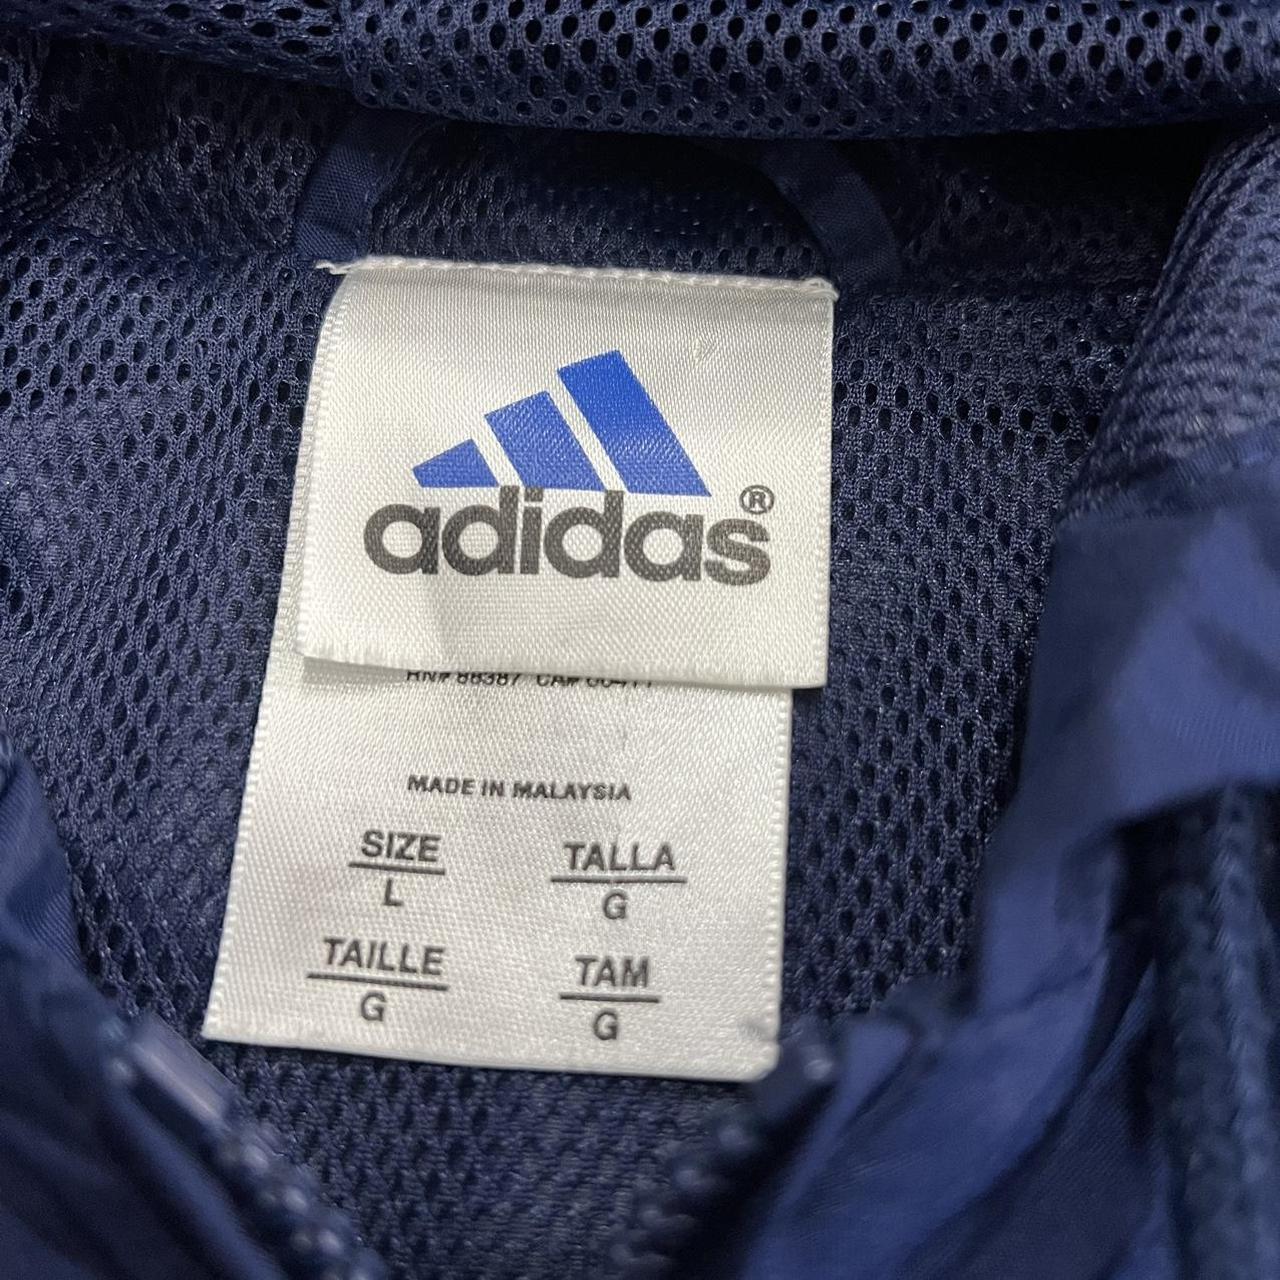 Vintage 1990s adidas track jacket Size large Great... - Depop